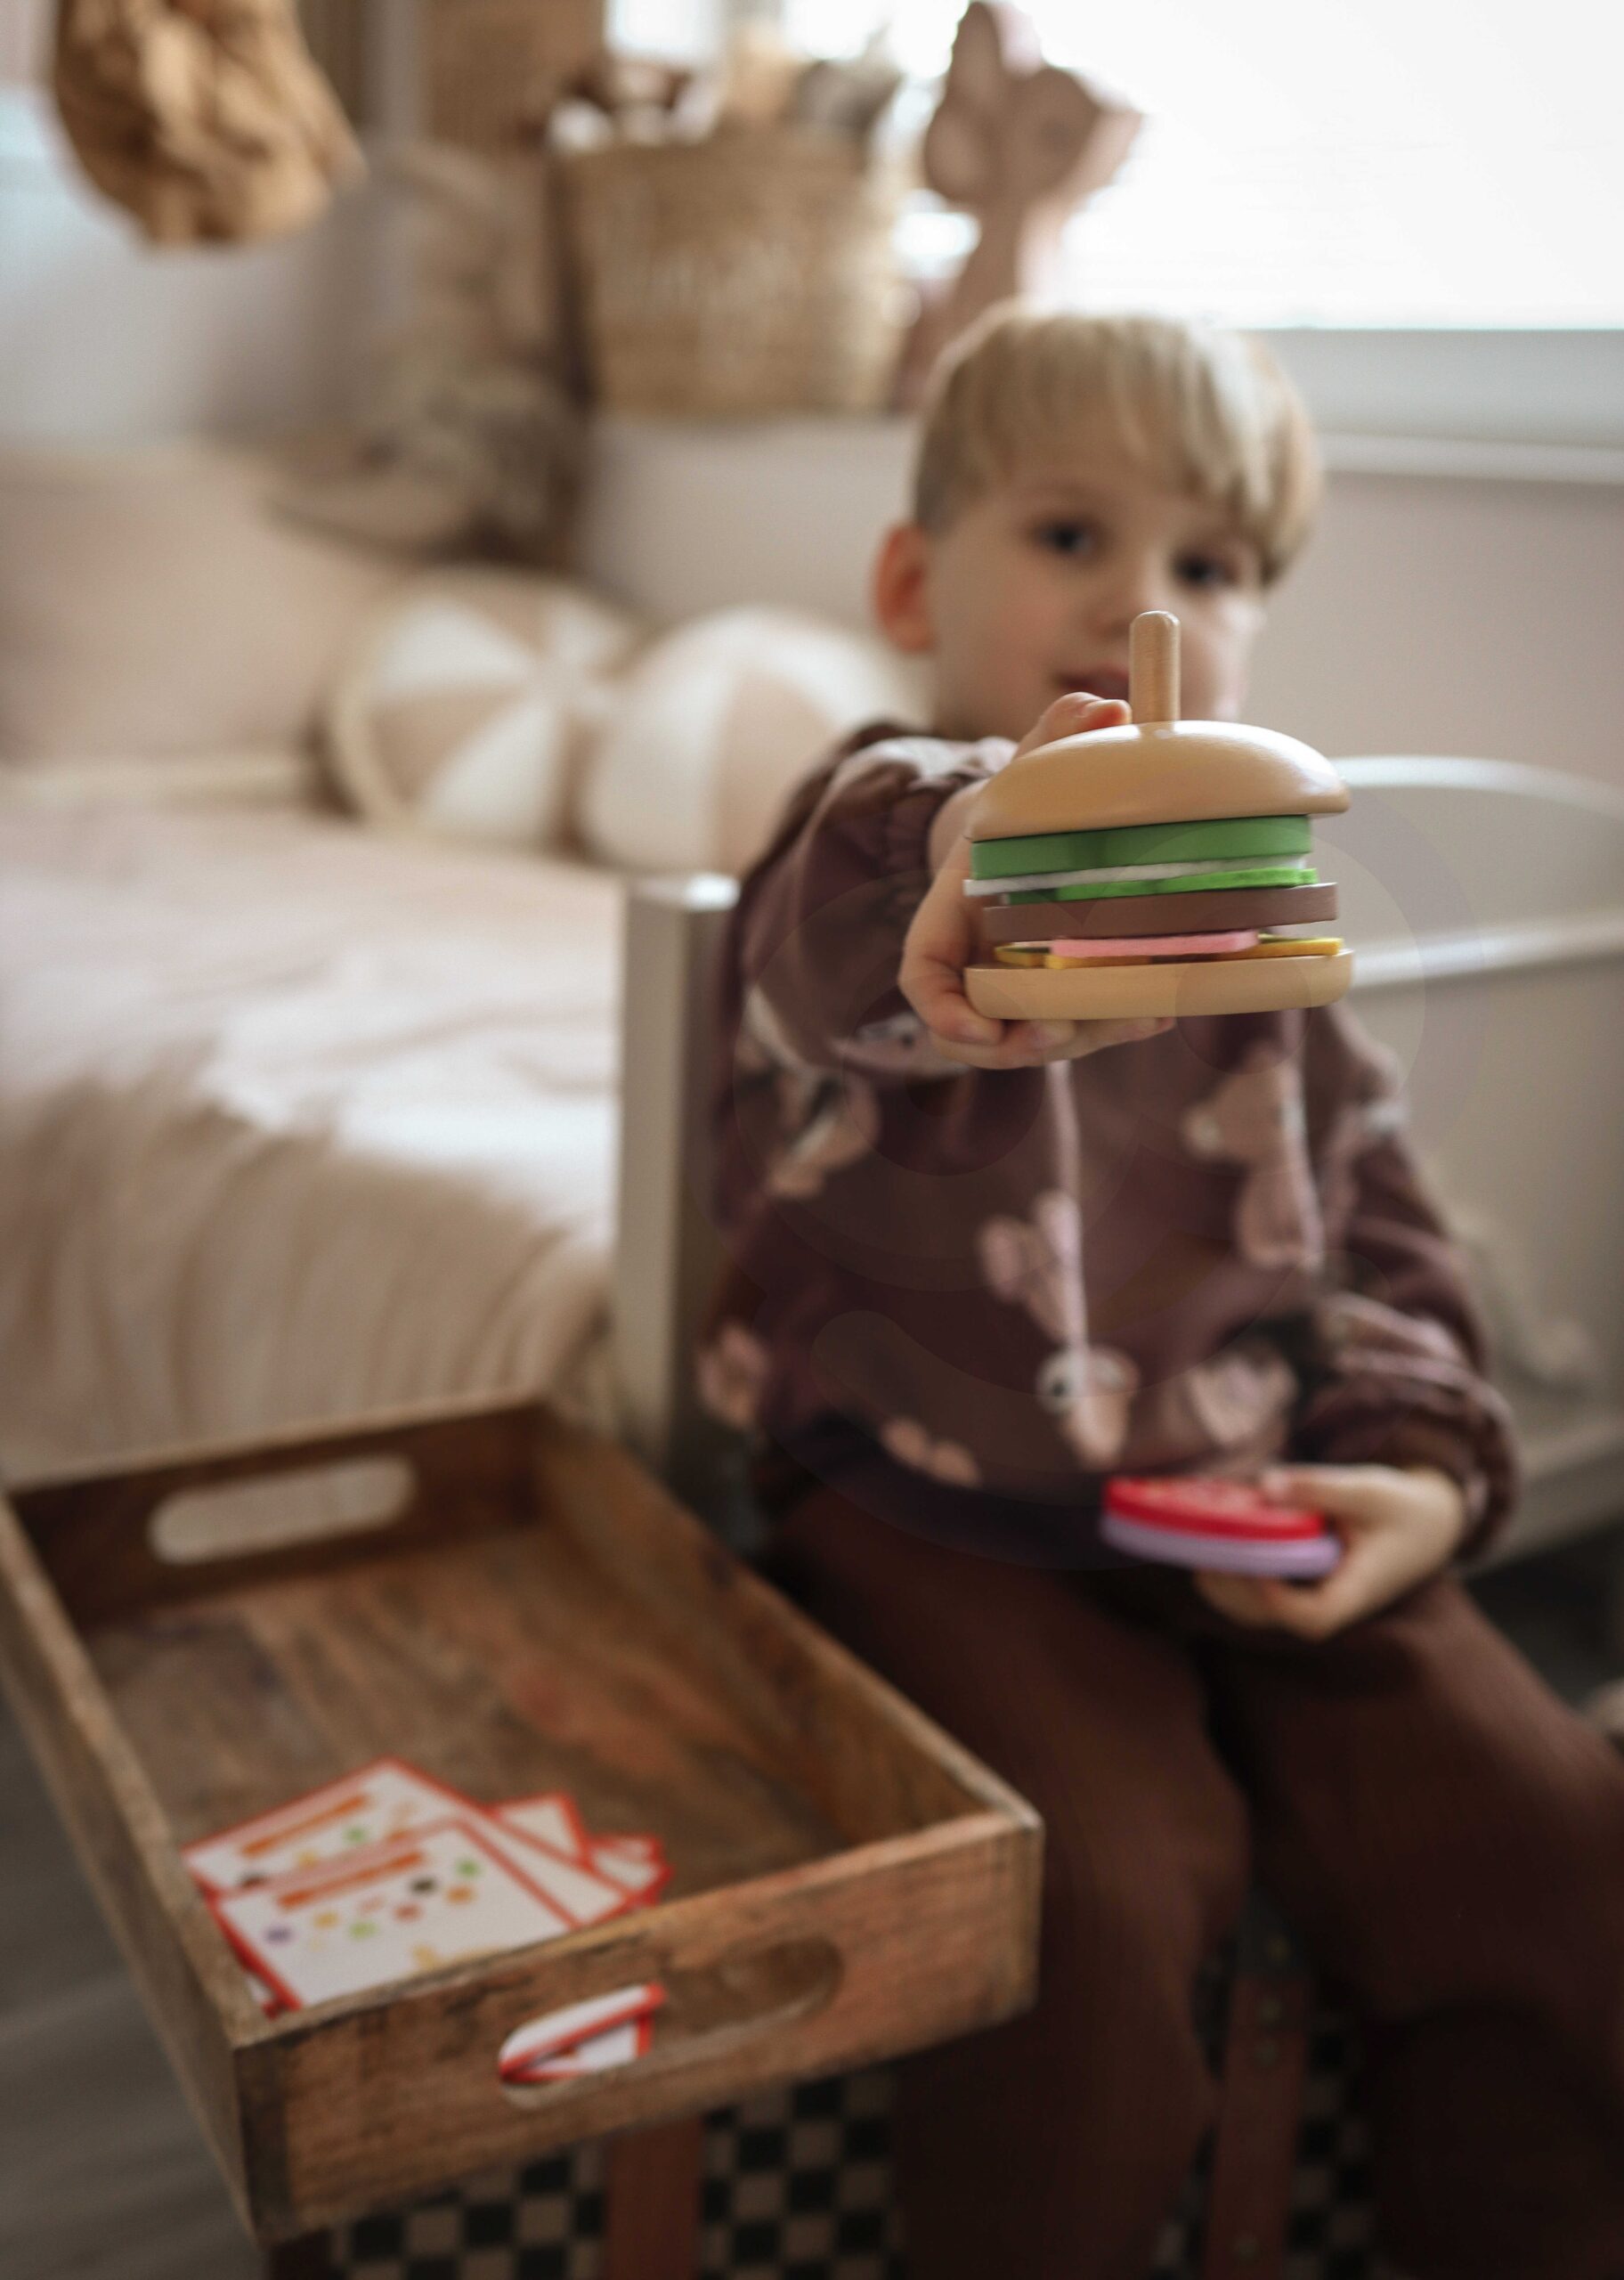 Green drewniany burger restauracja układanka dla dzieci 15 el. certyfikat FSC, zabawka dla dzieci, Woopie